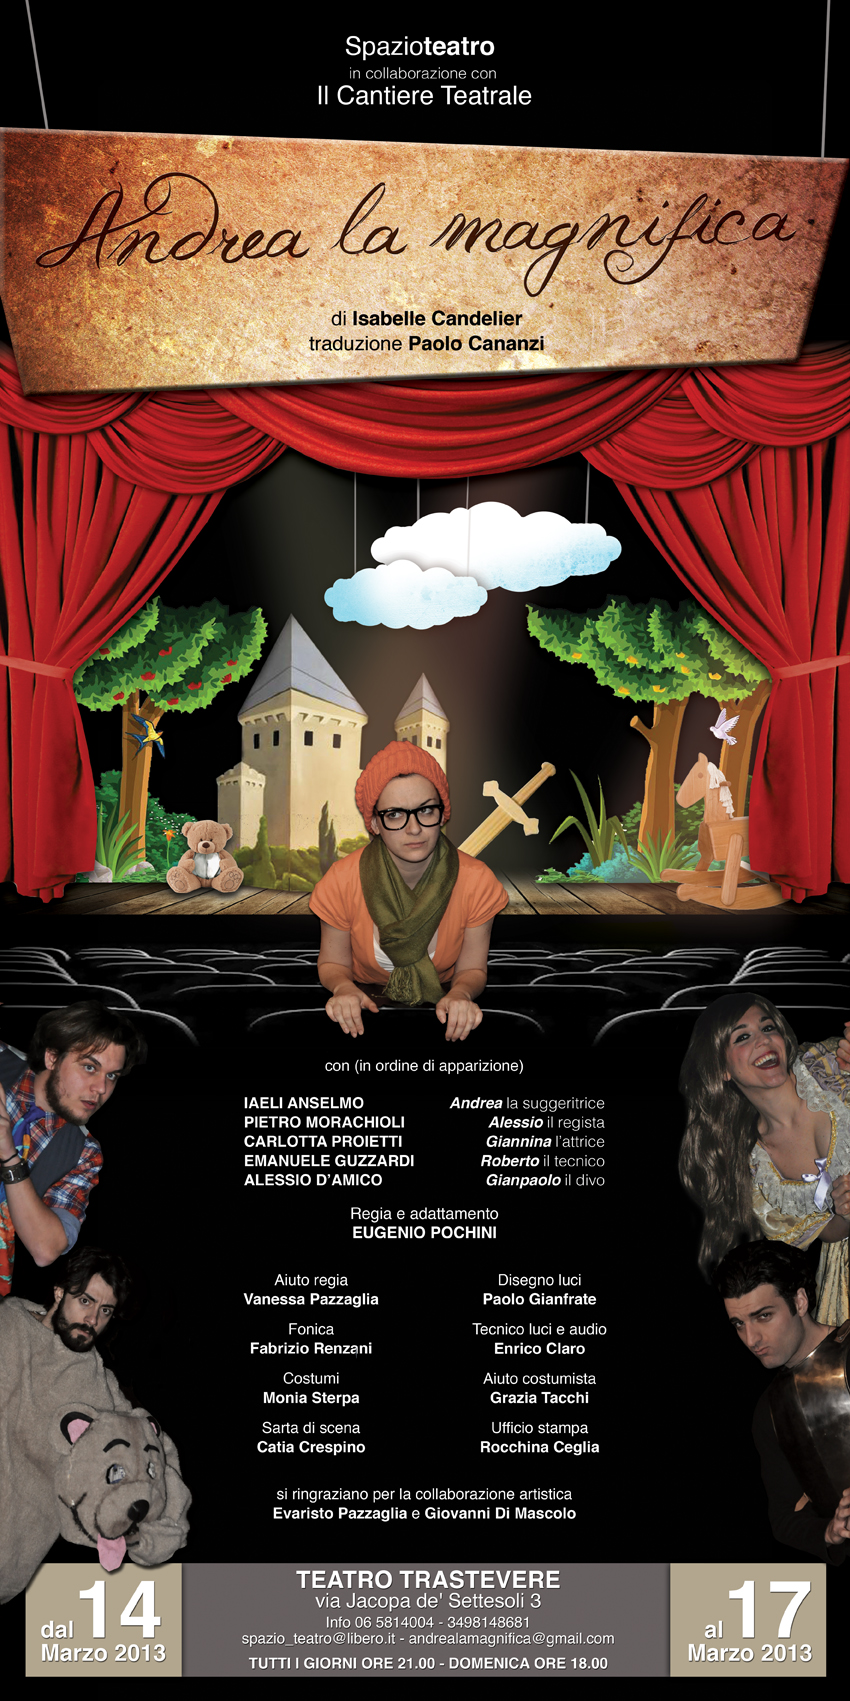 ANDREA LA MAGNIFICA, commedia brillante di Isabelle Candelier, teatro Trastevere 14-17 marzo